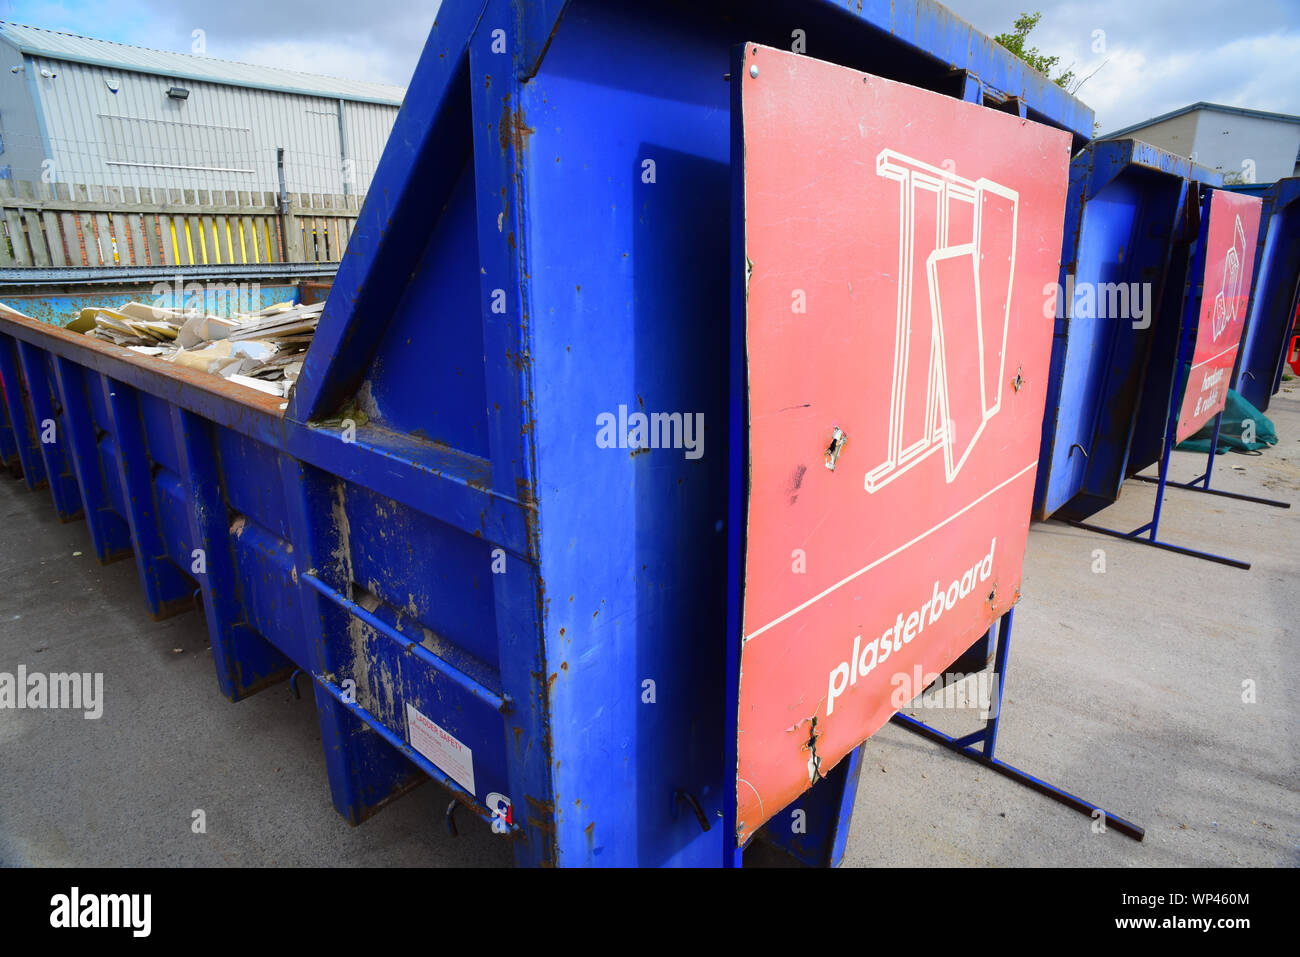 Aller plein de conseil à plâtre foyer Royaume-Uni centre de recyclage Banque D'Images